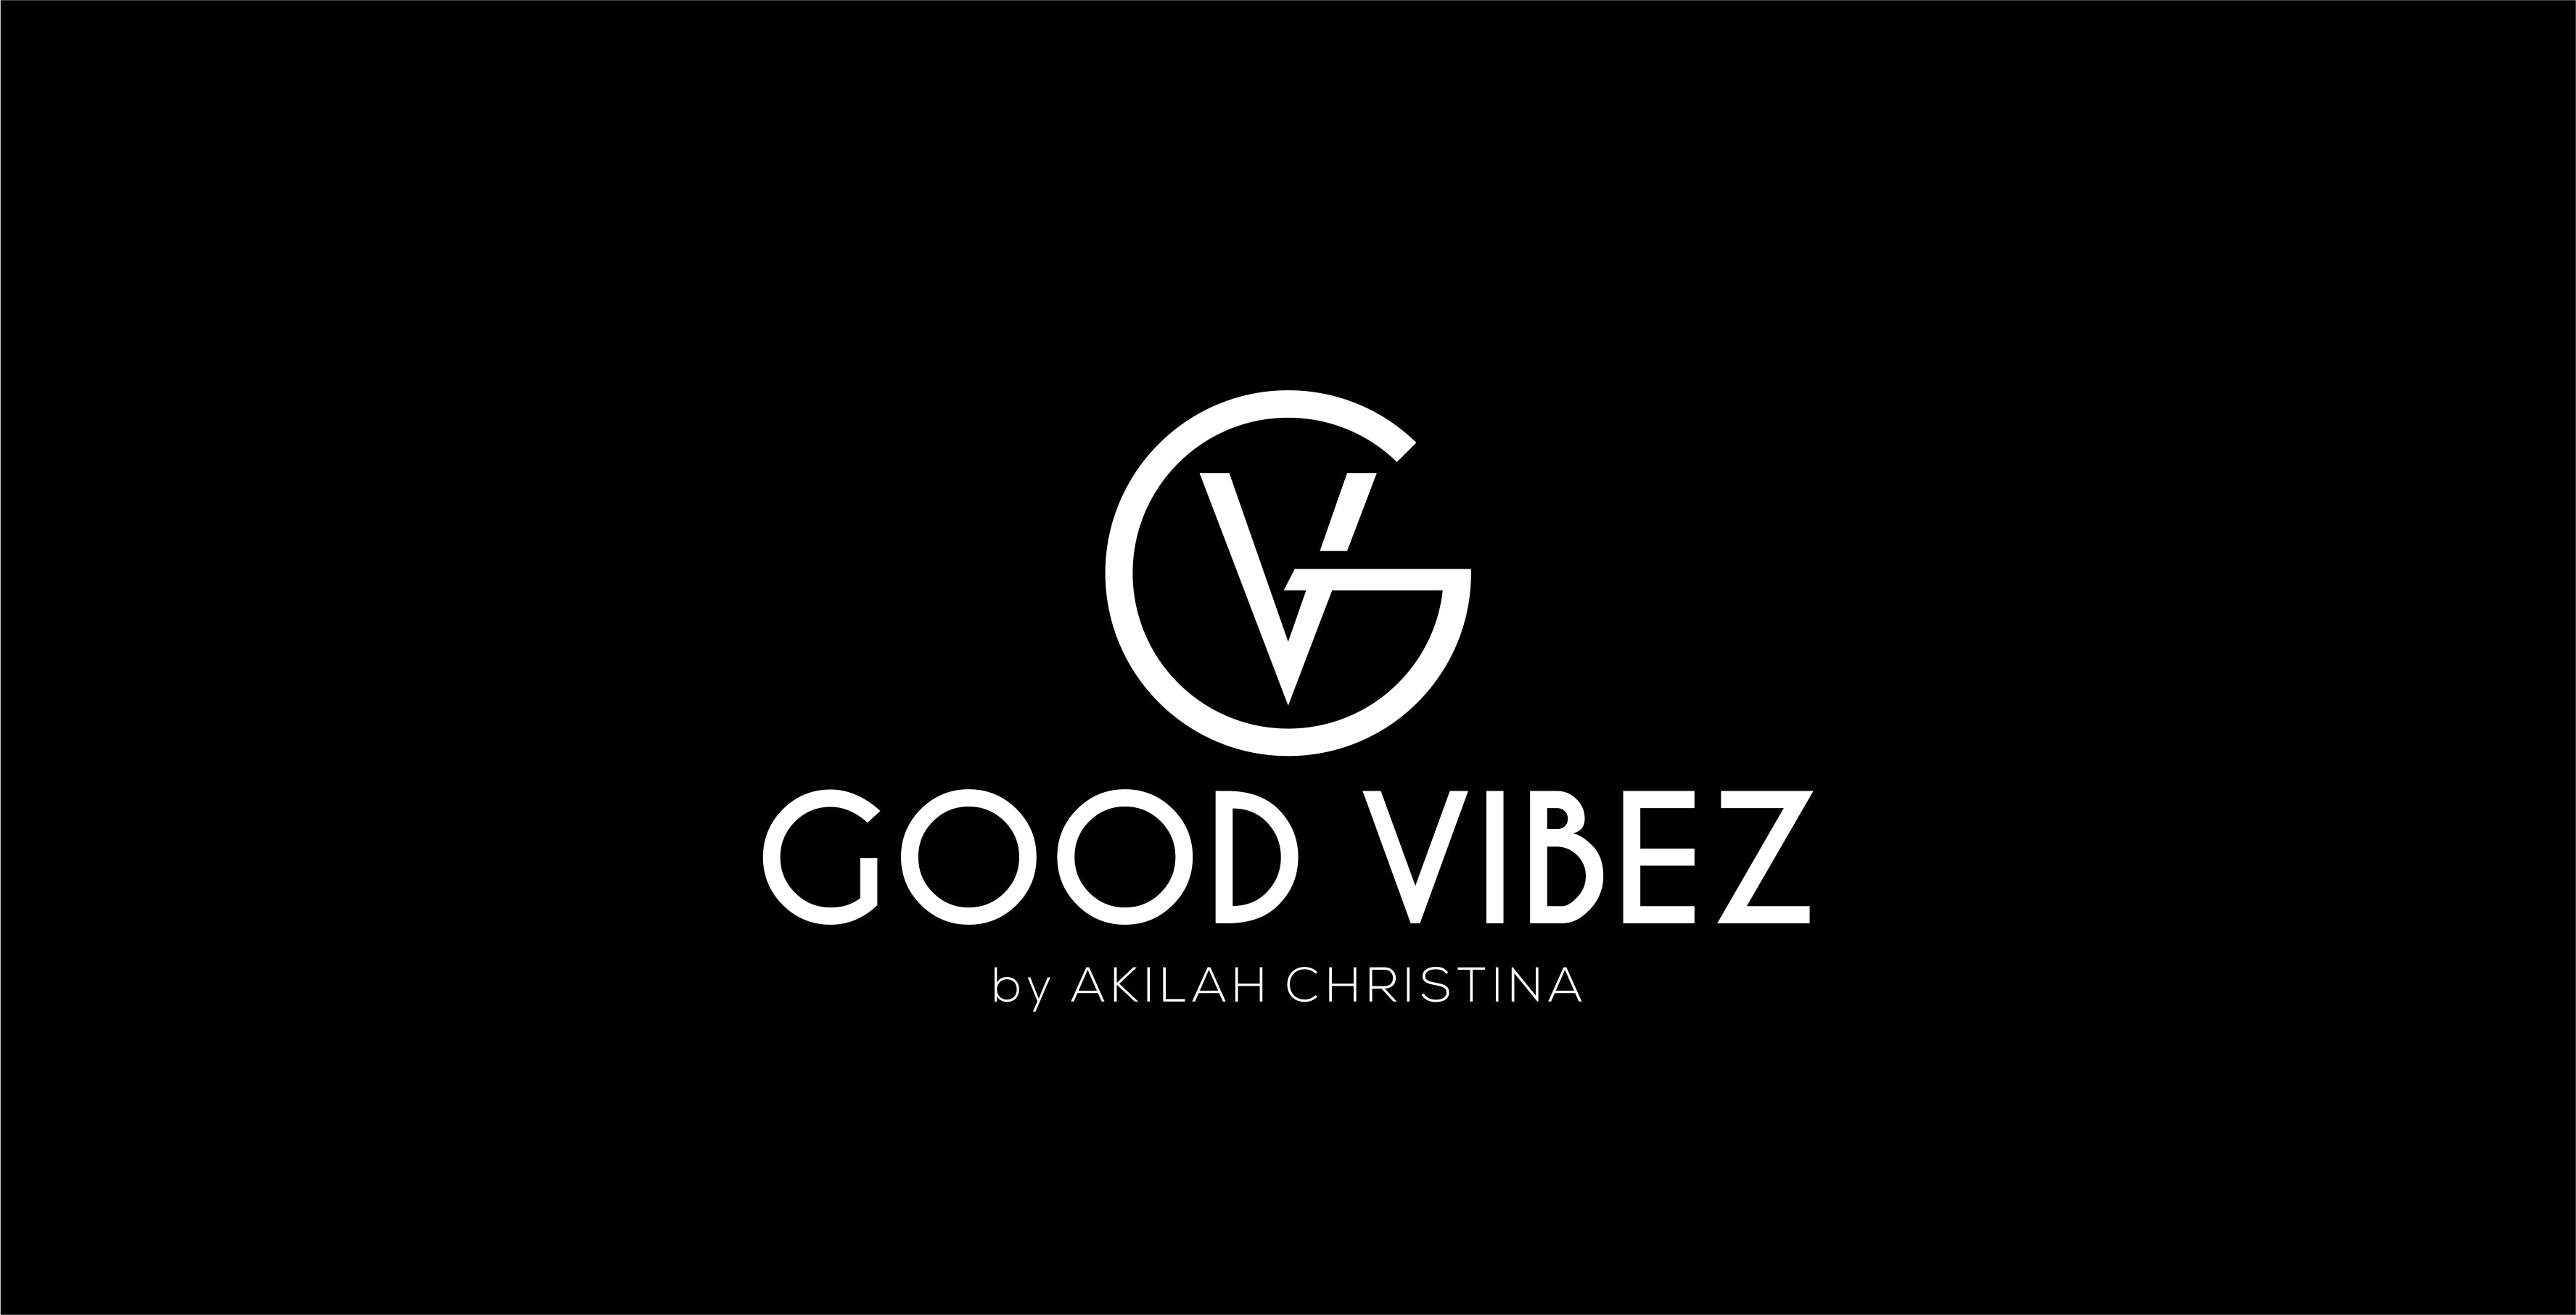 GOOD VIBEZ By AKILAH CHRISTINA